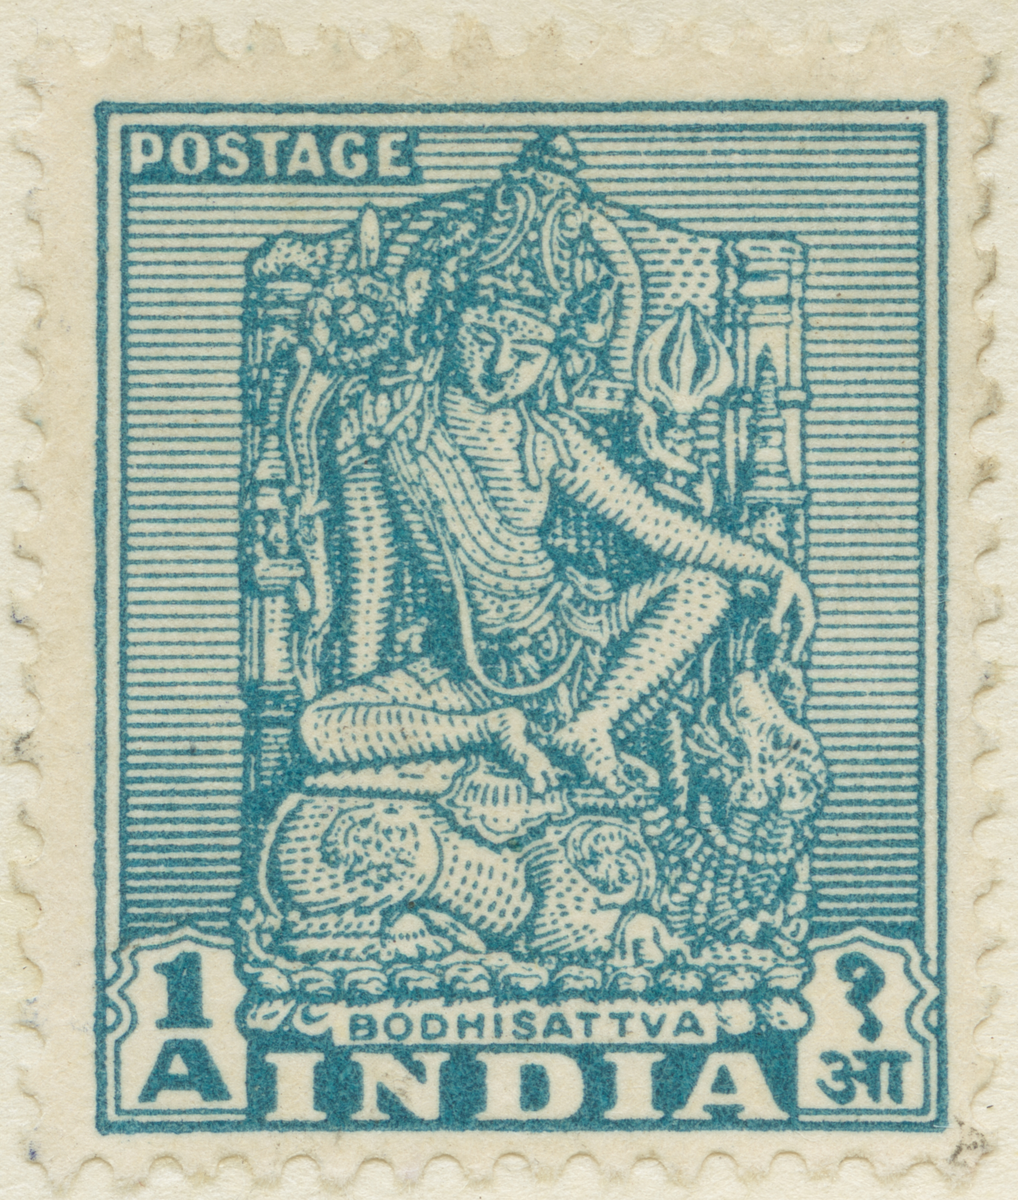 Frimärke ur Gösta Bodmans filatelistiska motivsamling, påbörjad 1950.
Frimärke från Indien, 1949. Motiv av Bodhisattva: Buddha Bild